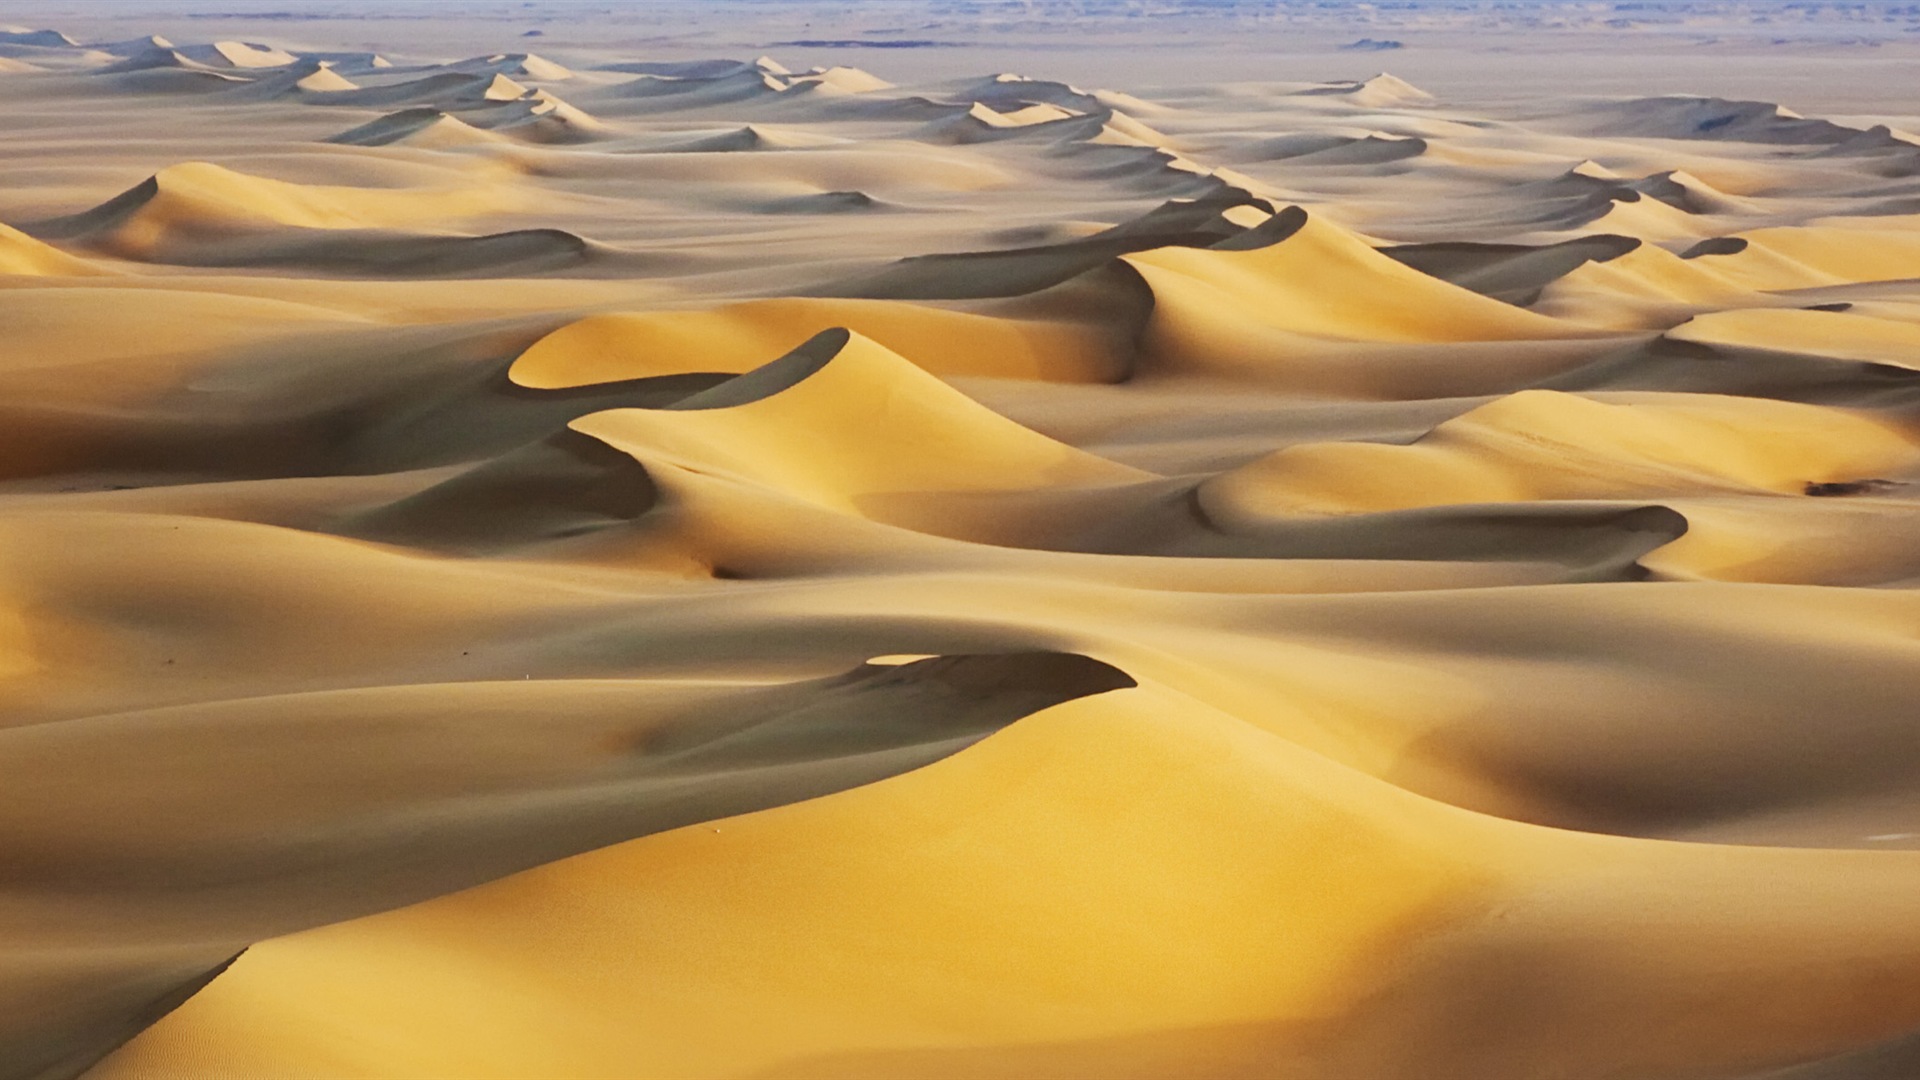 Les déserts chauds et arides, de Windows 8 fonds d'écran widescreen panoramique #4 - 1920x1080